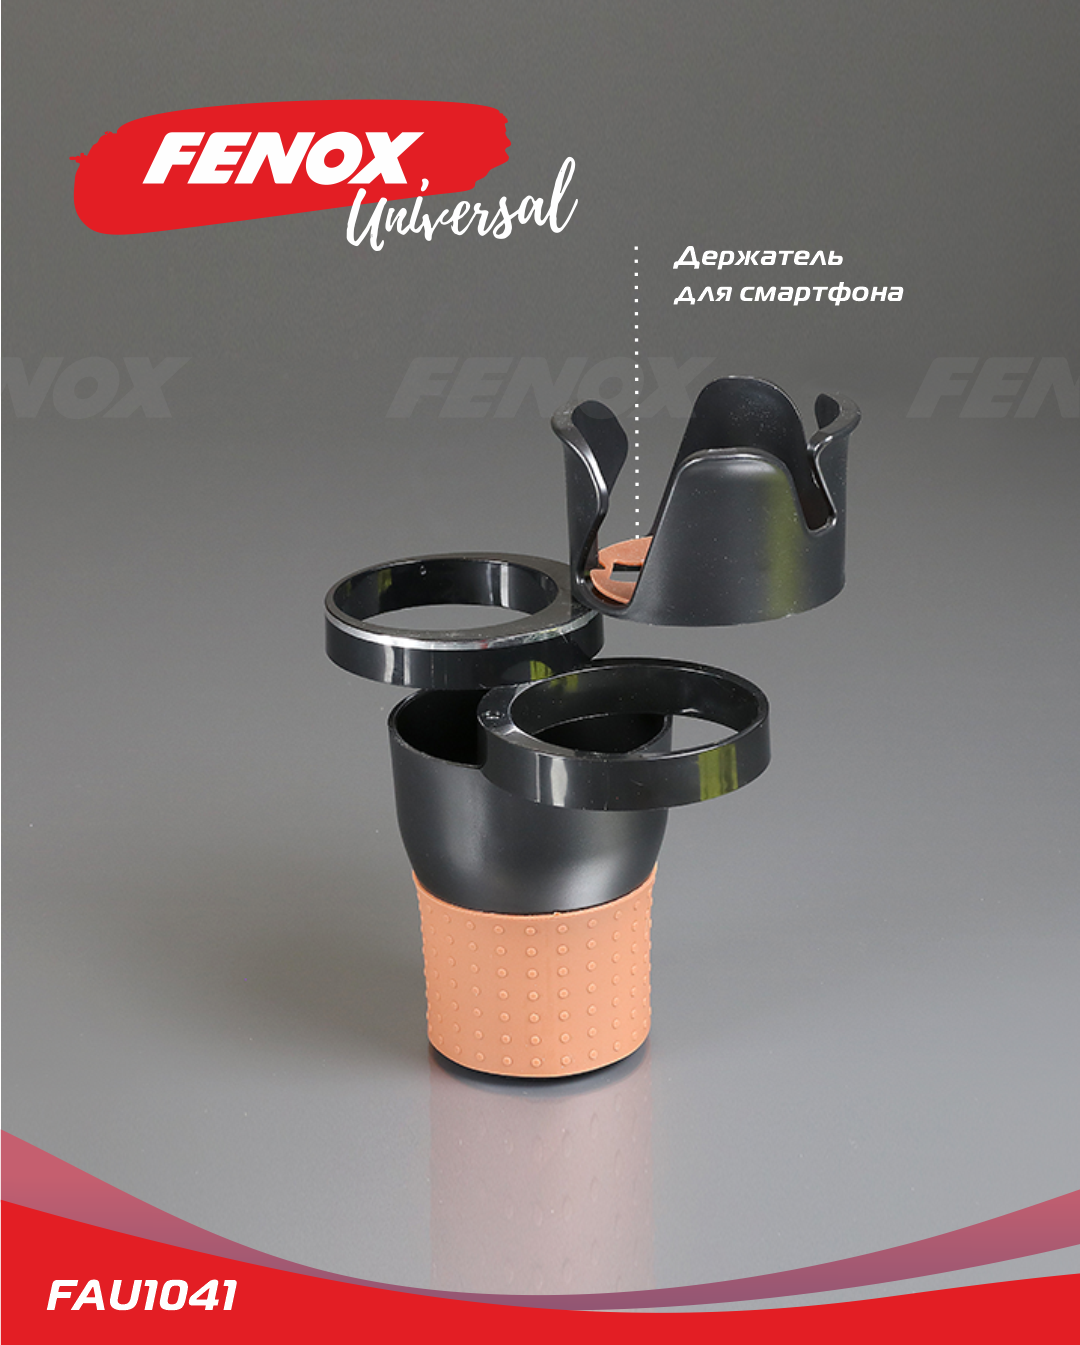 Подстаканник для авто - Fenox FAU1041